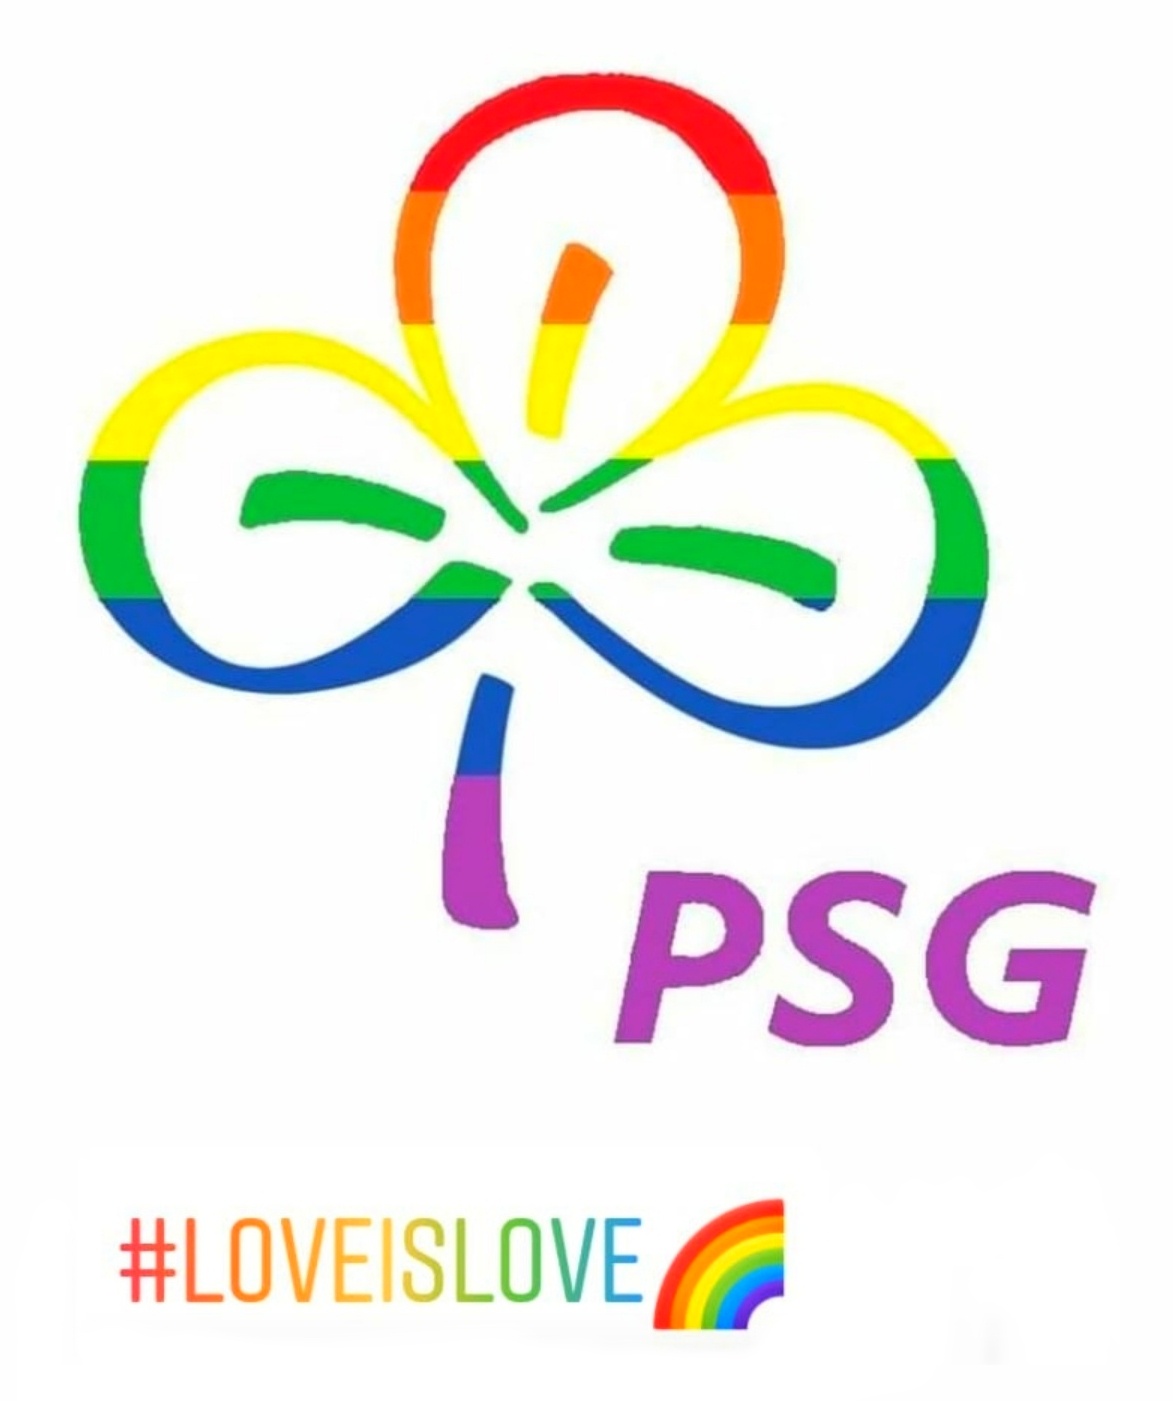 PSG Logo in Regenbogenfarben